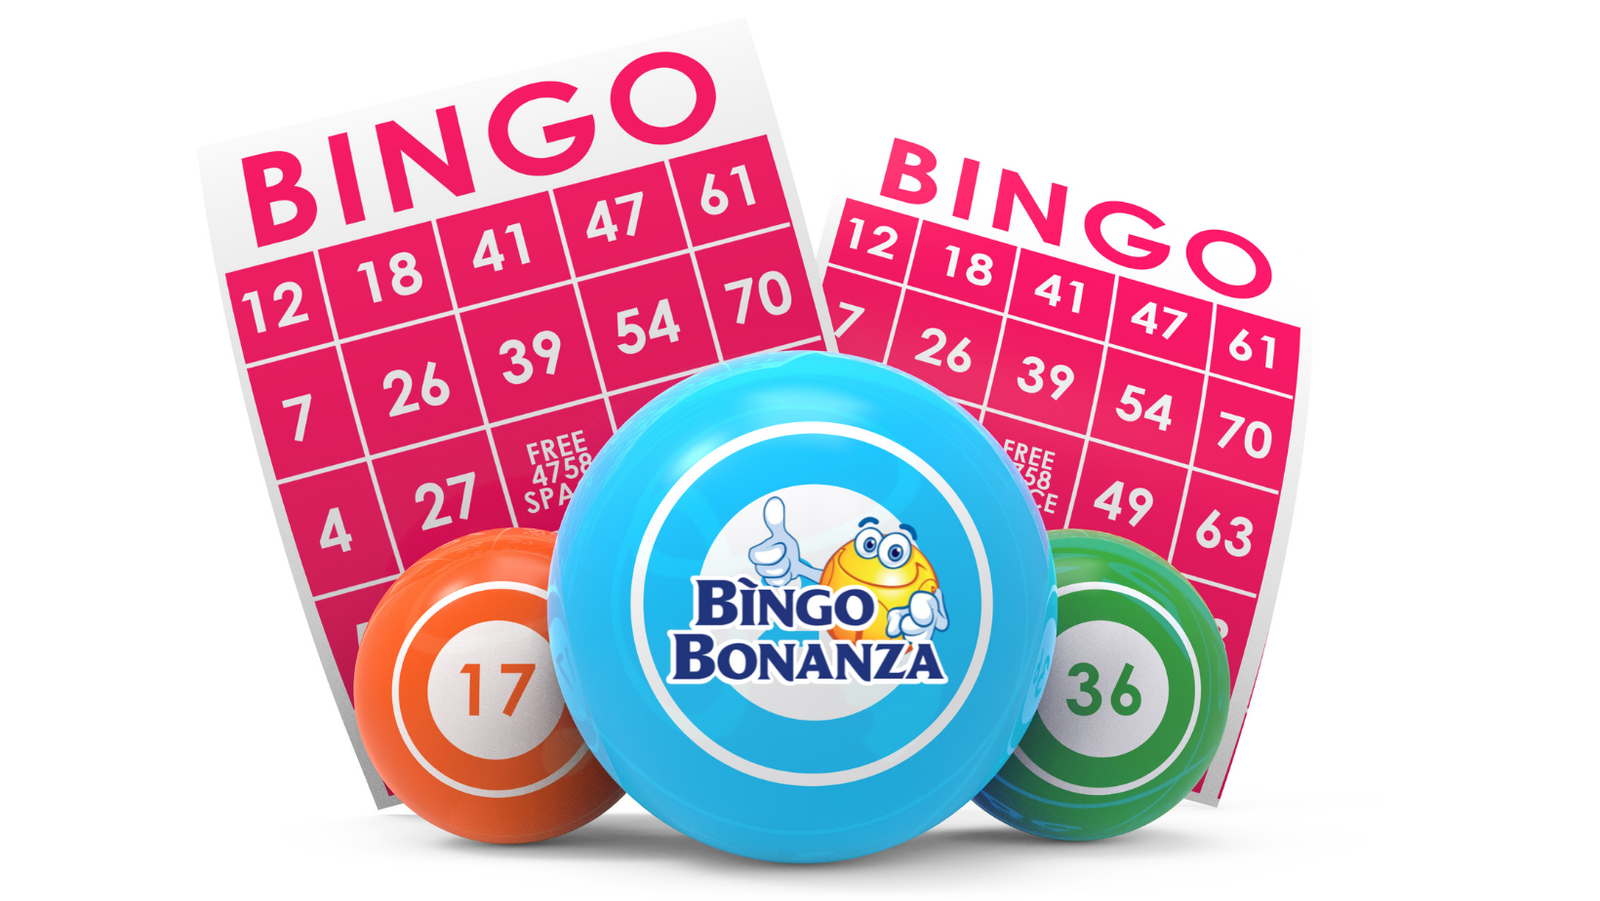 bingoplus-bingo